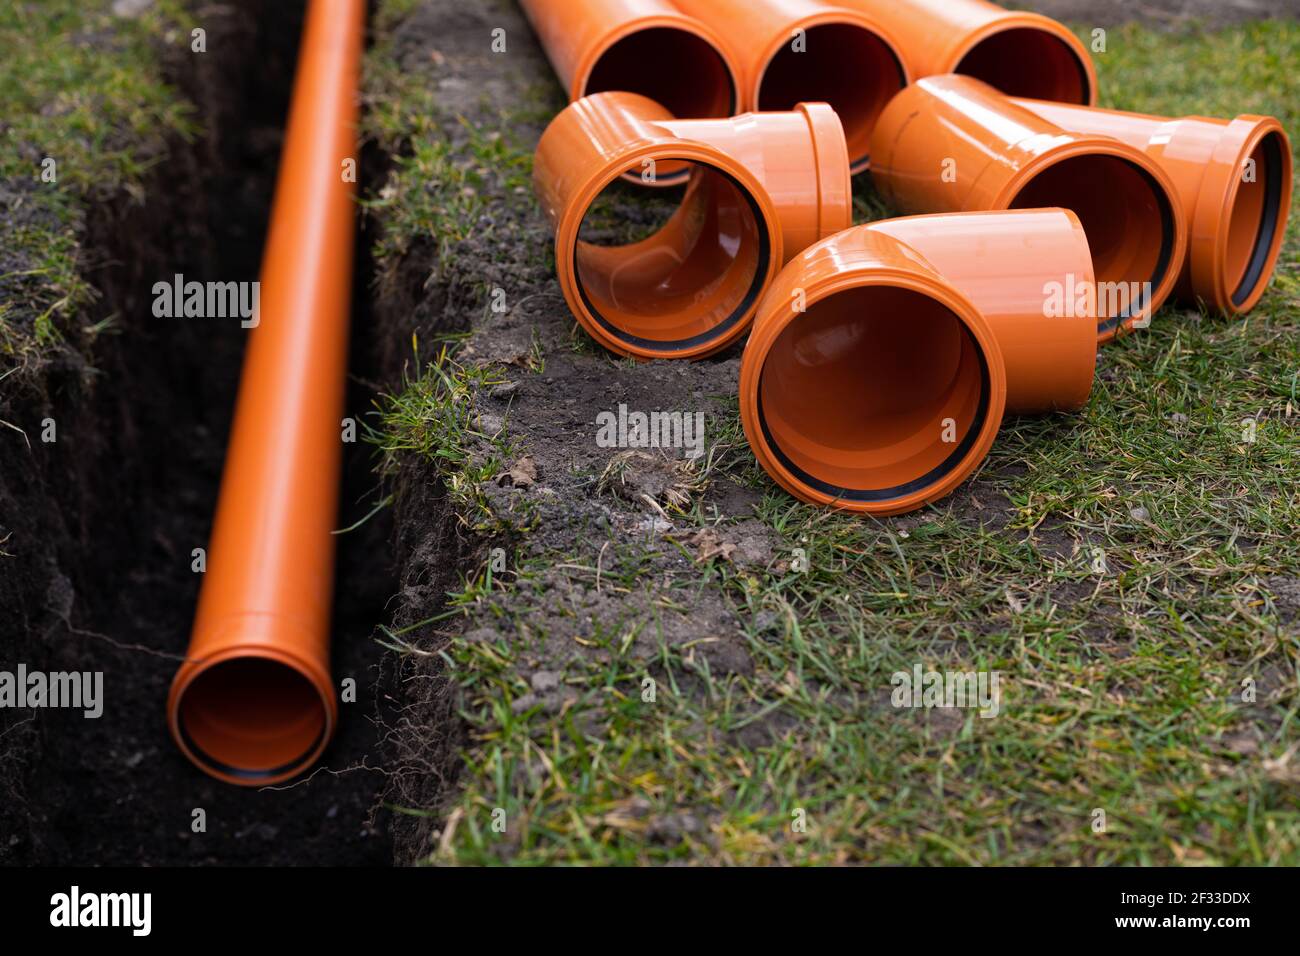 Pose des tuyaux d'évacuation en PVC orange dans le sol Photo Stock - Alamy